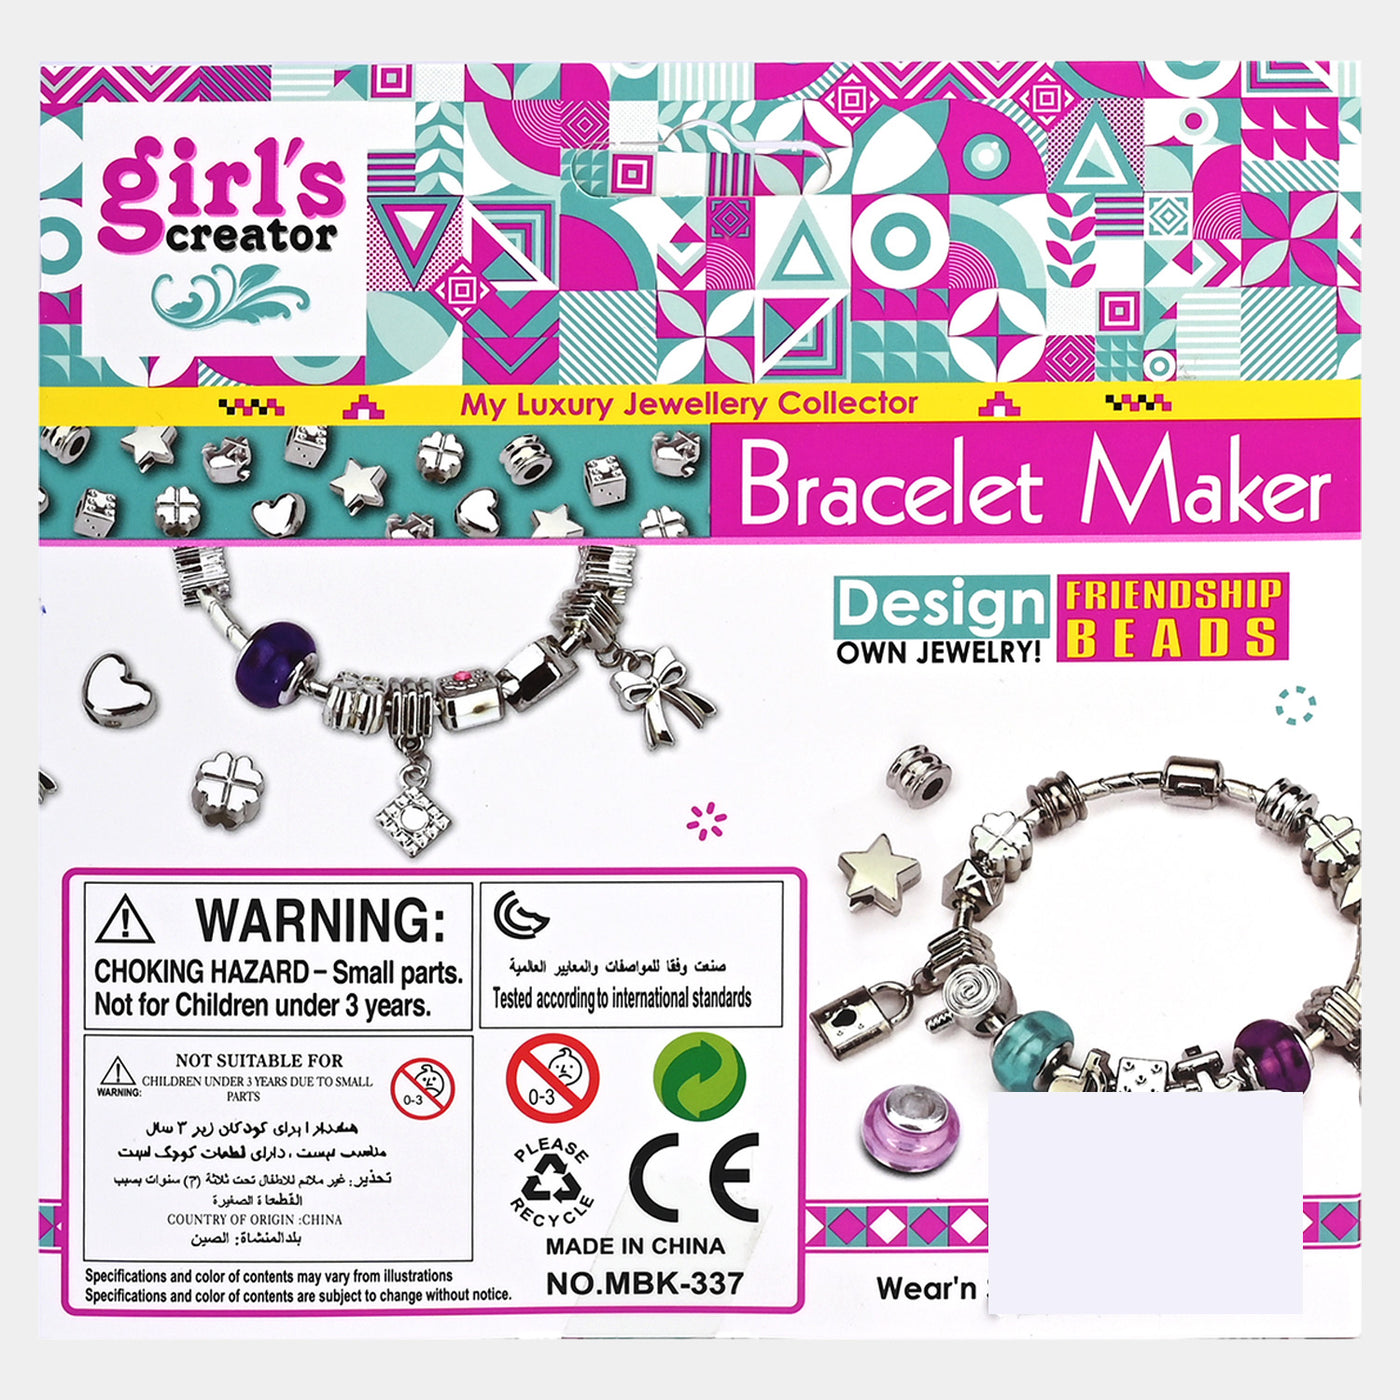 Girls Bracelet Maker